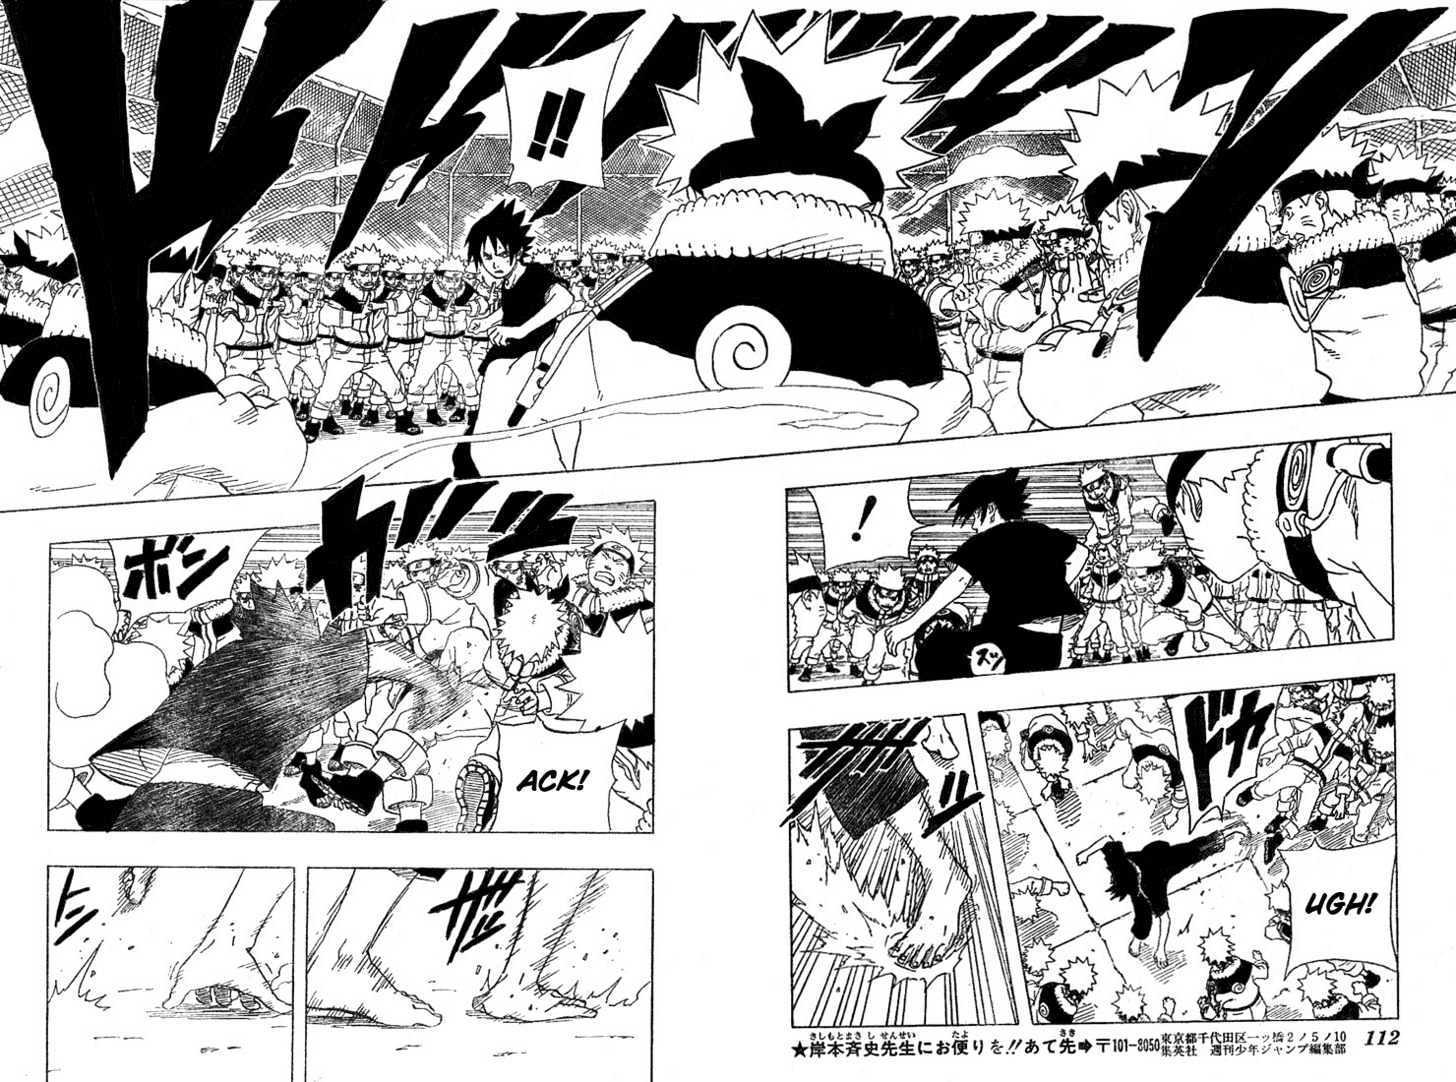 Vol.20 Chapter 175 – Naruto vs. Sasuke!! | 12 page